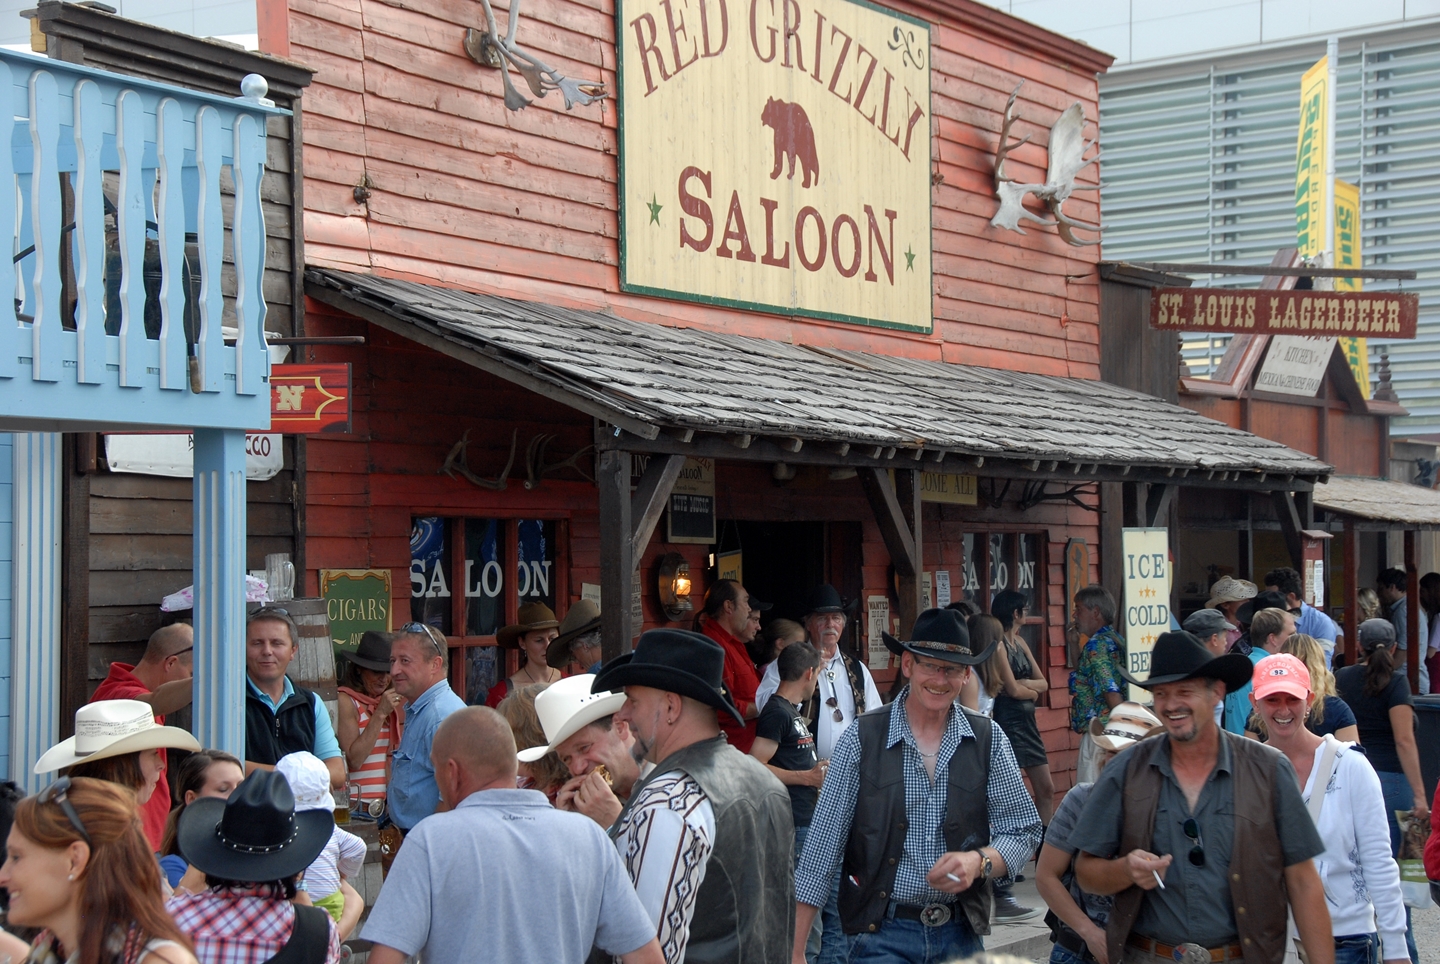 Red Grizzly Saloon auf der AMERICANA